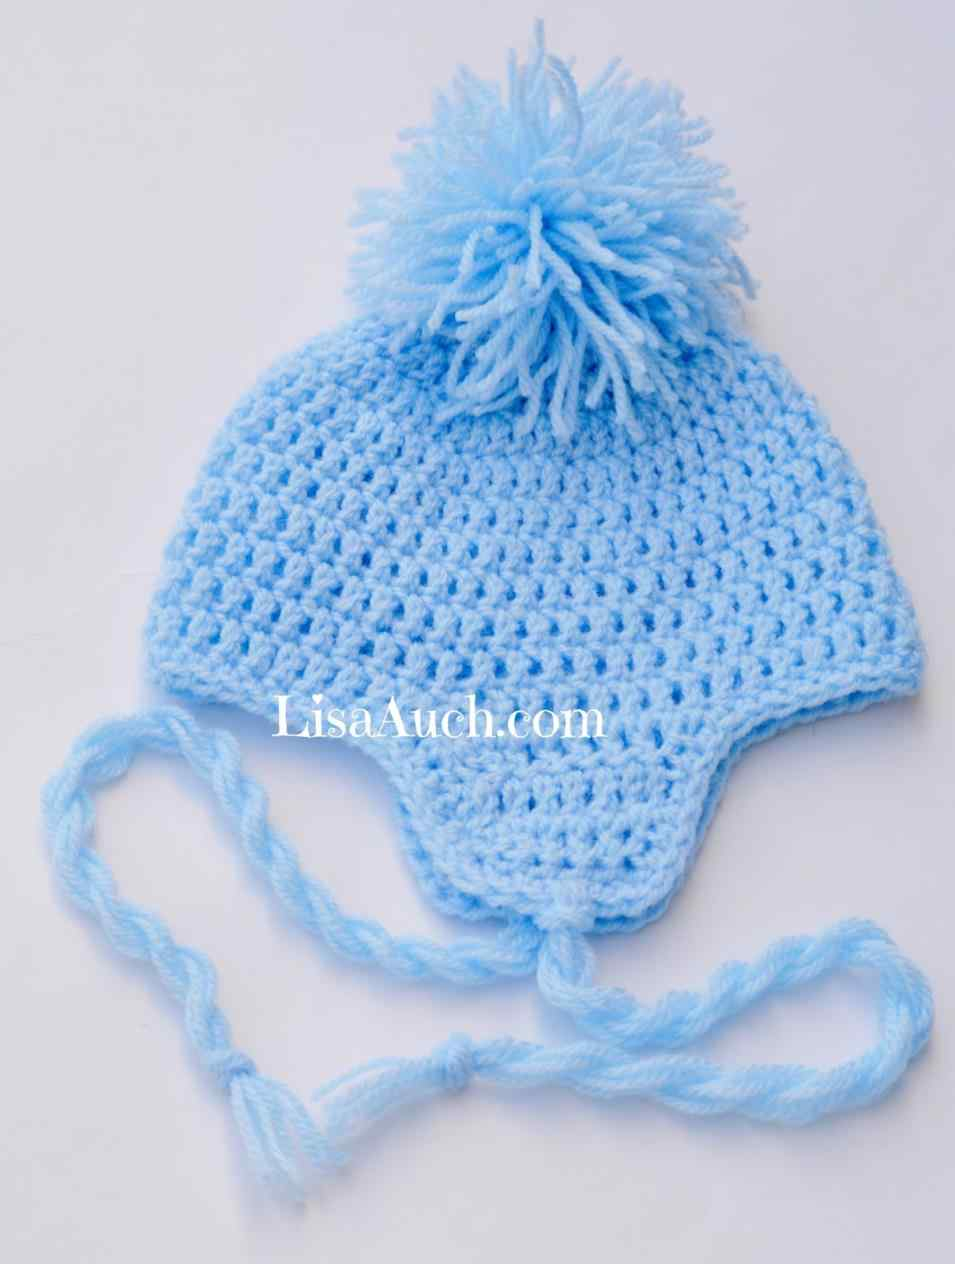 Single Crochet Earflap Hat Pattern Earflap Hat Crochet Pattern For Kids Chaki